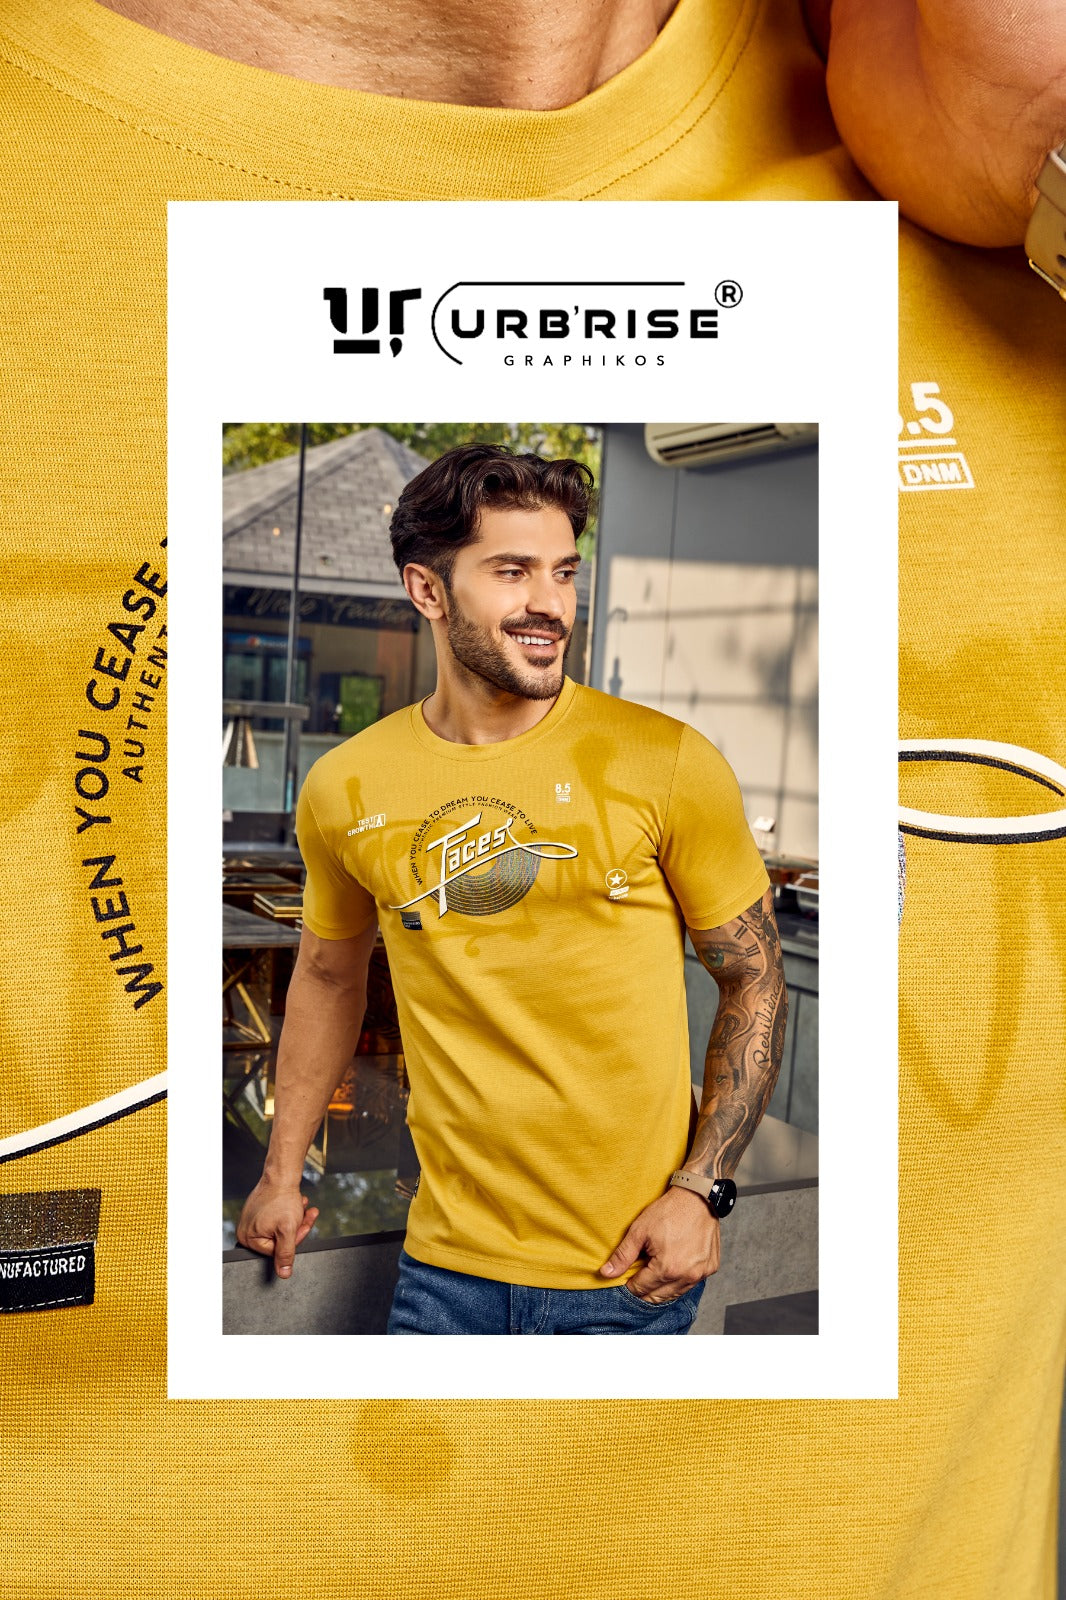 926-933 Urbanrise Canvas Interlock Mens Tshirts